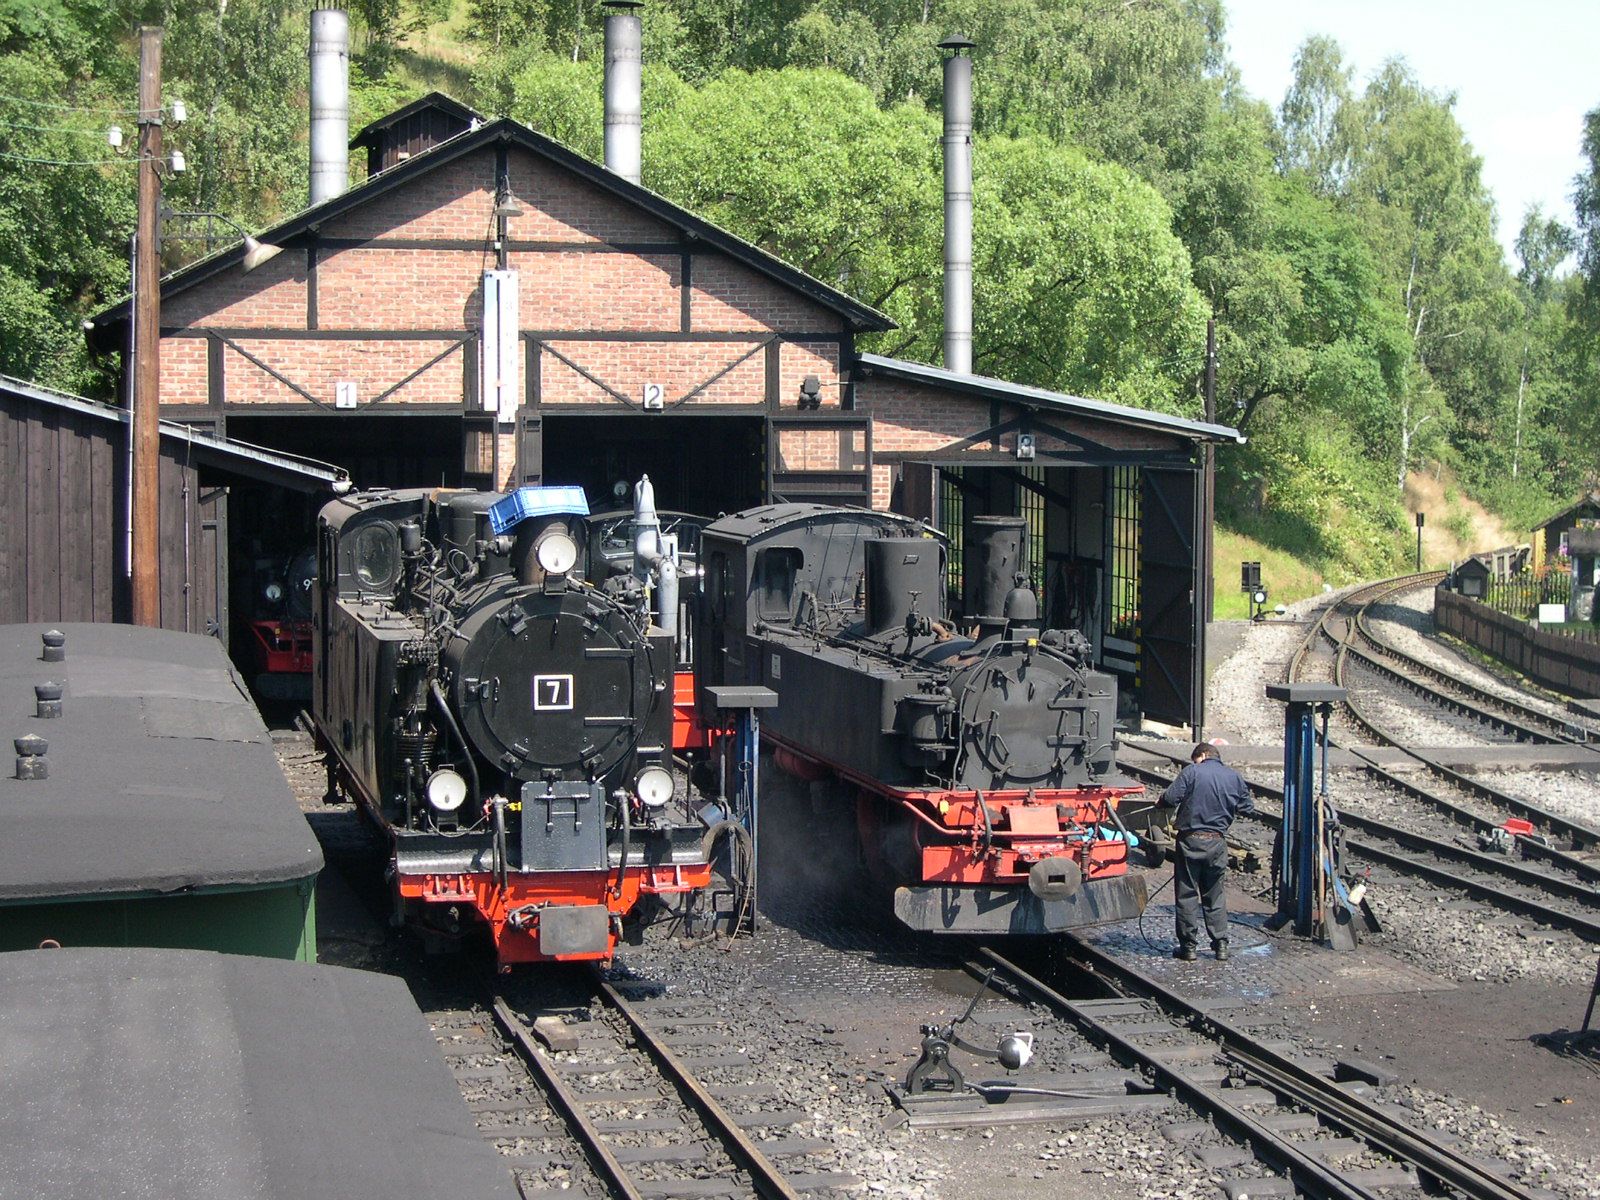 Am 26. Juli präsentieren sich die beiden Gäste, Lok 7 (ex. Mansfelder Bergwerksbahn) bereits gereinigt und IV K 99 584, an der gerade die erste Grundreinigung nach ihrer Ankunft in Jöhstadt ausgeführt wird, vor dem Lokschuppen der Museumsbahn.